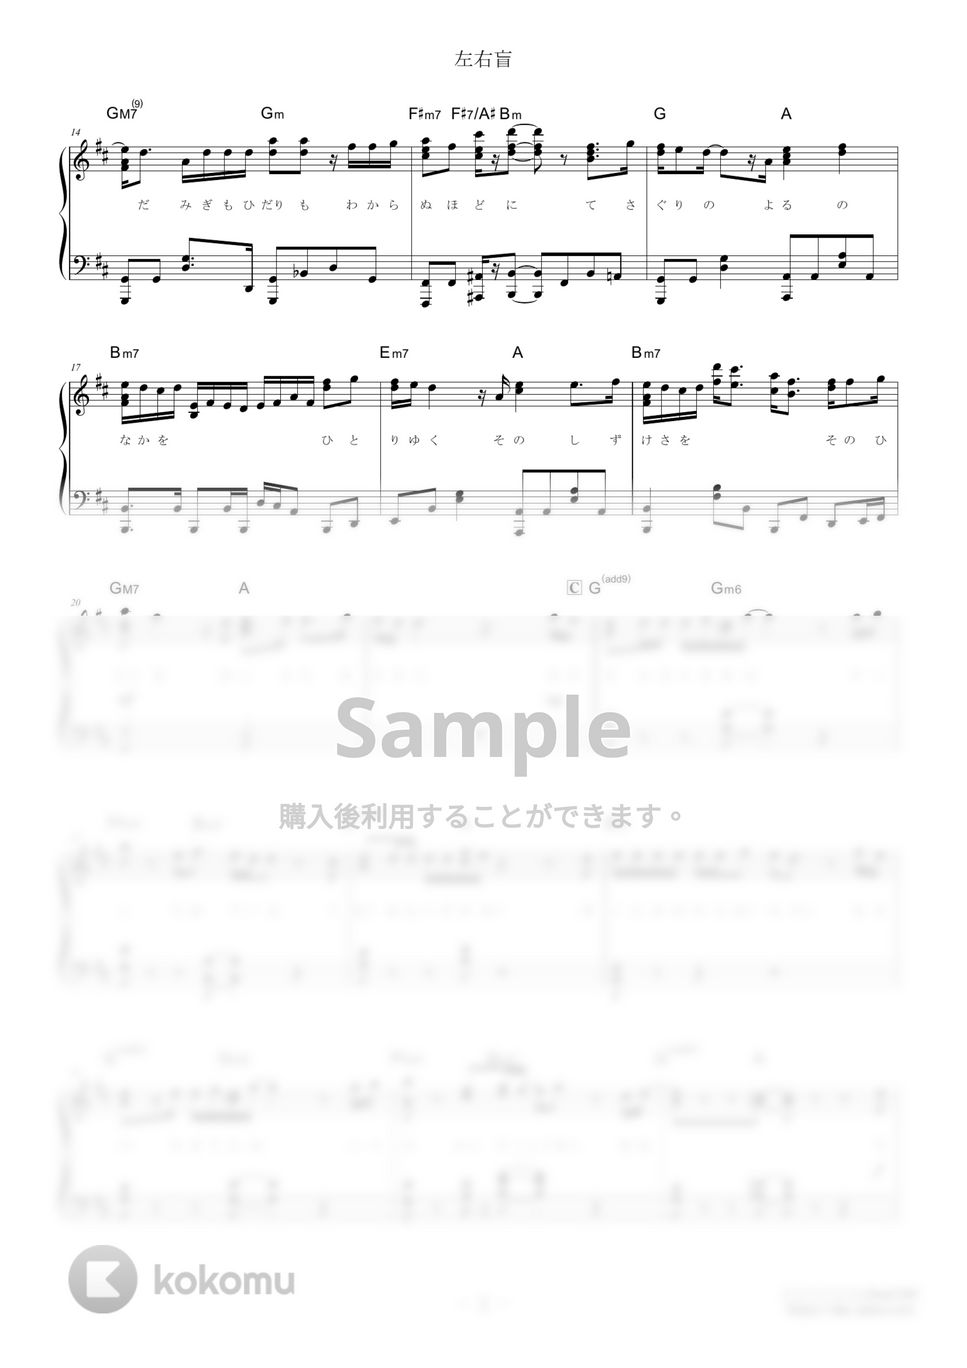 ヨルシカ - 左右盲 (難易度:★★★★☆) by Dさん